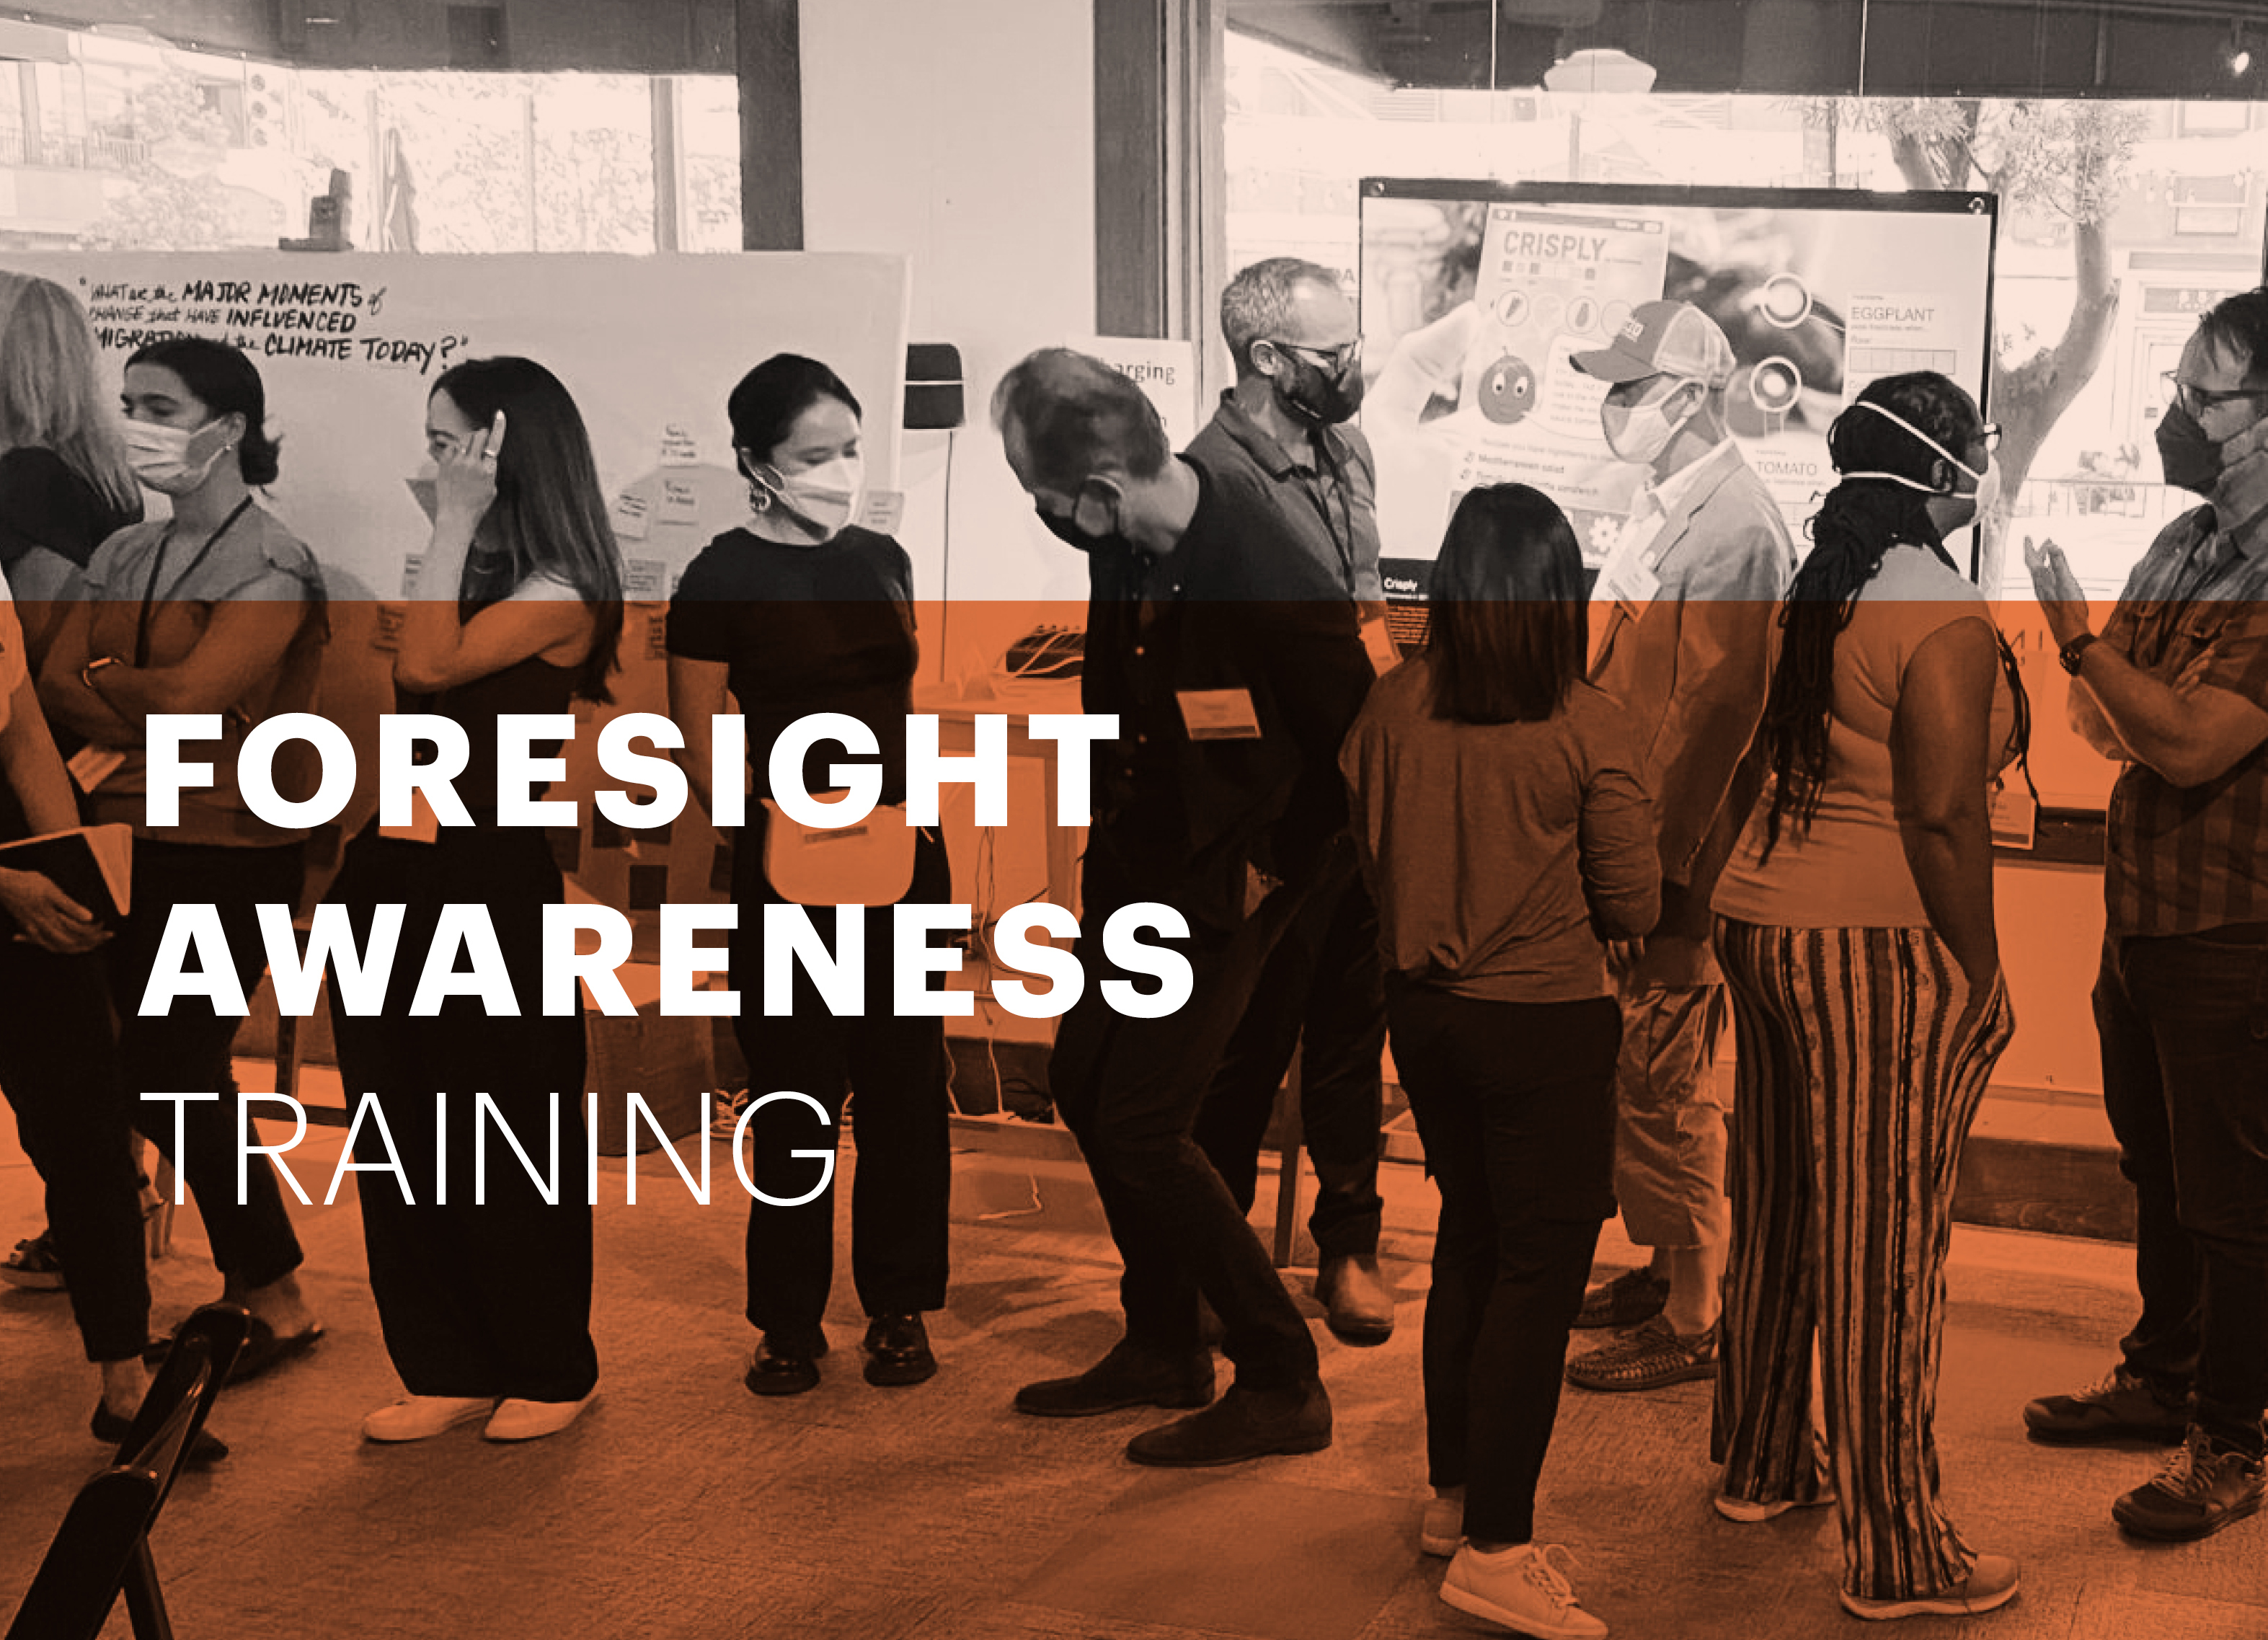 Foresight Awareness training